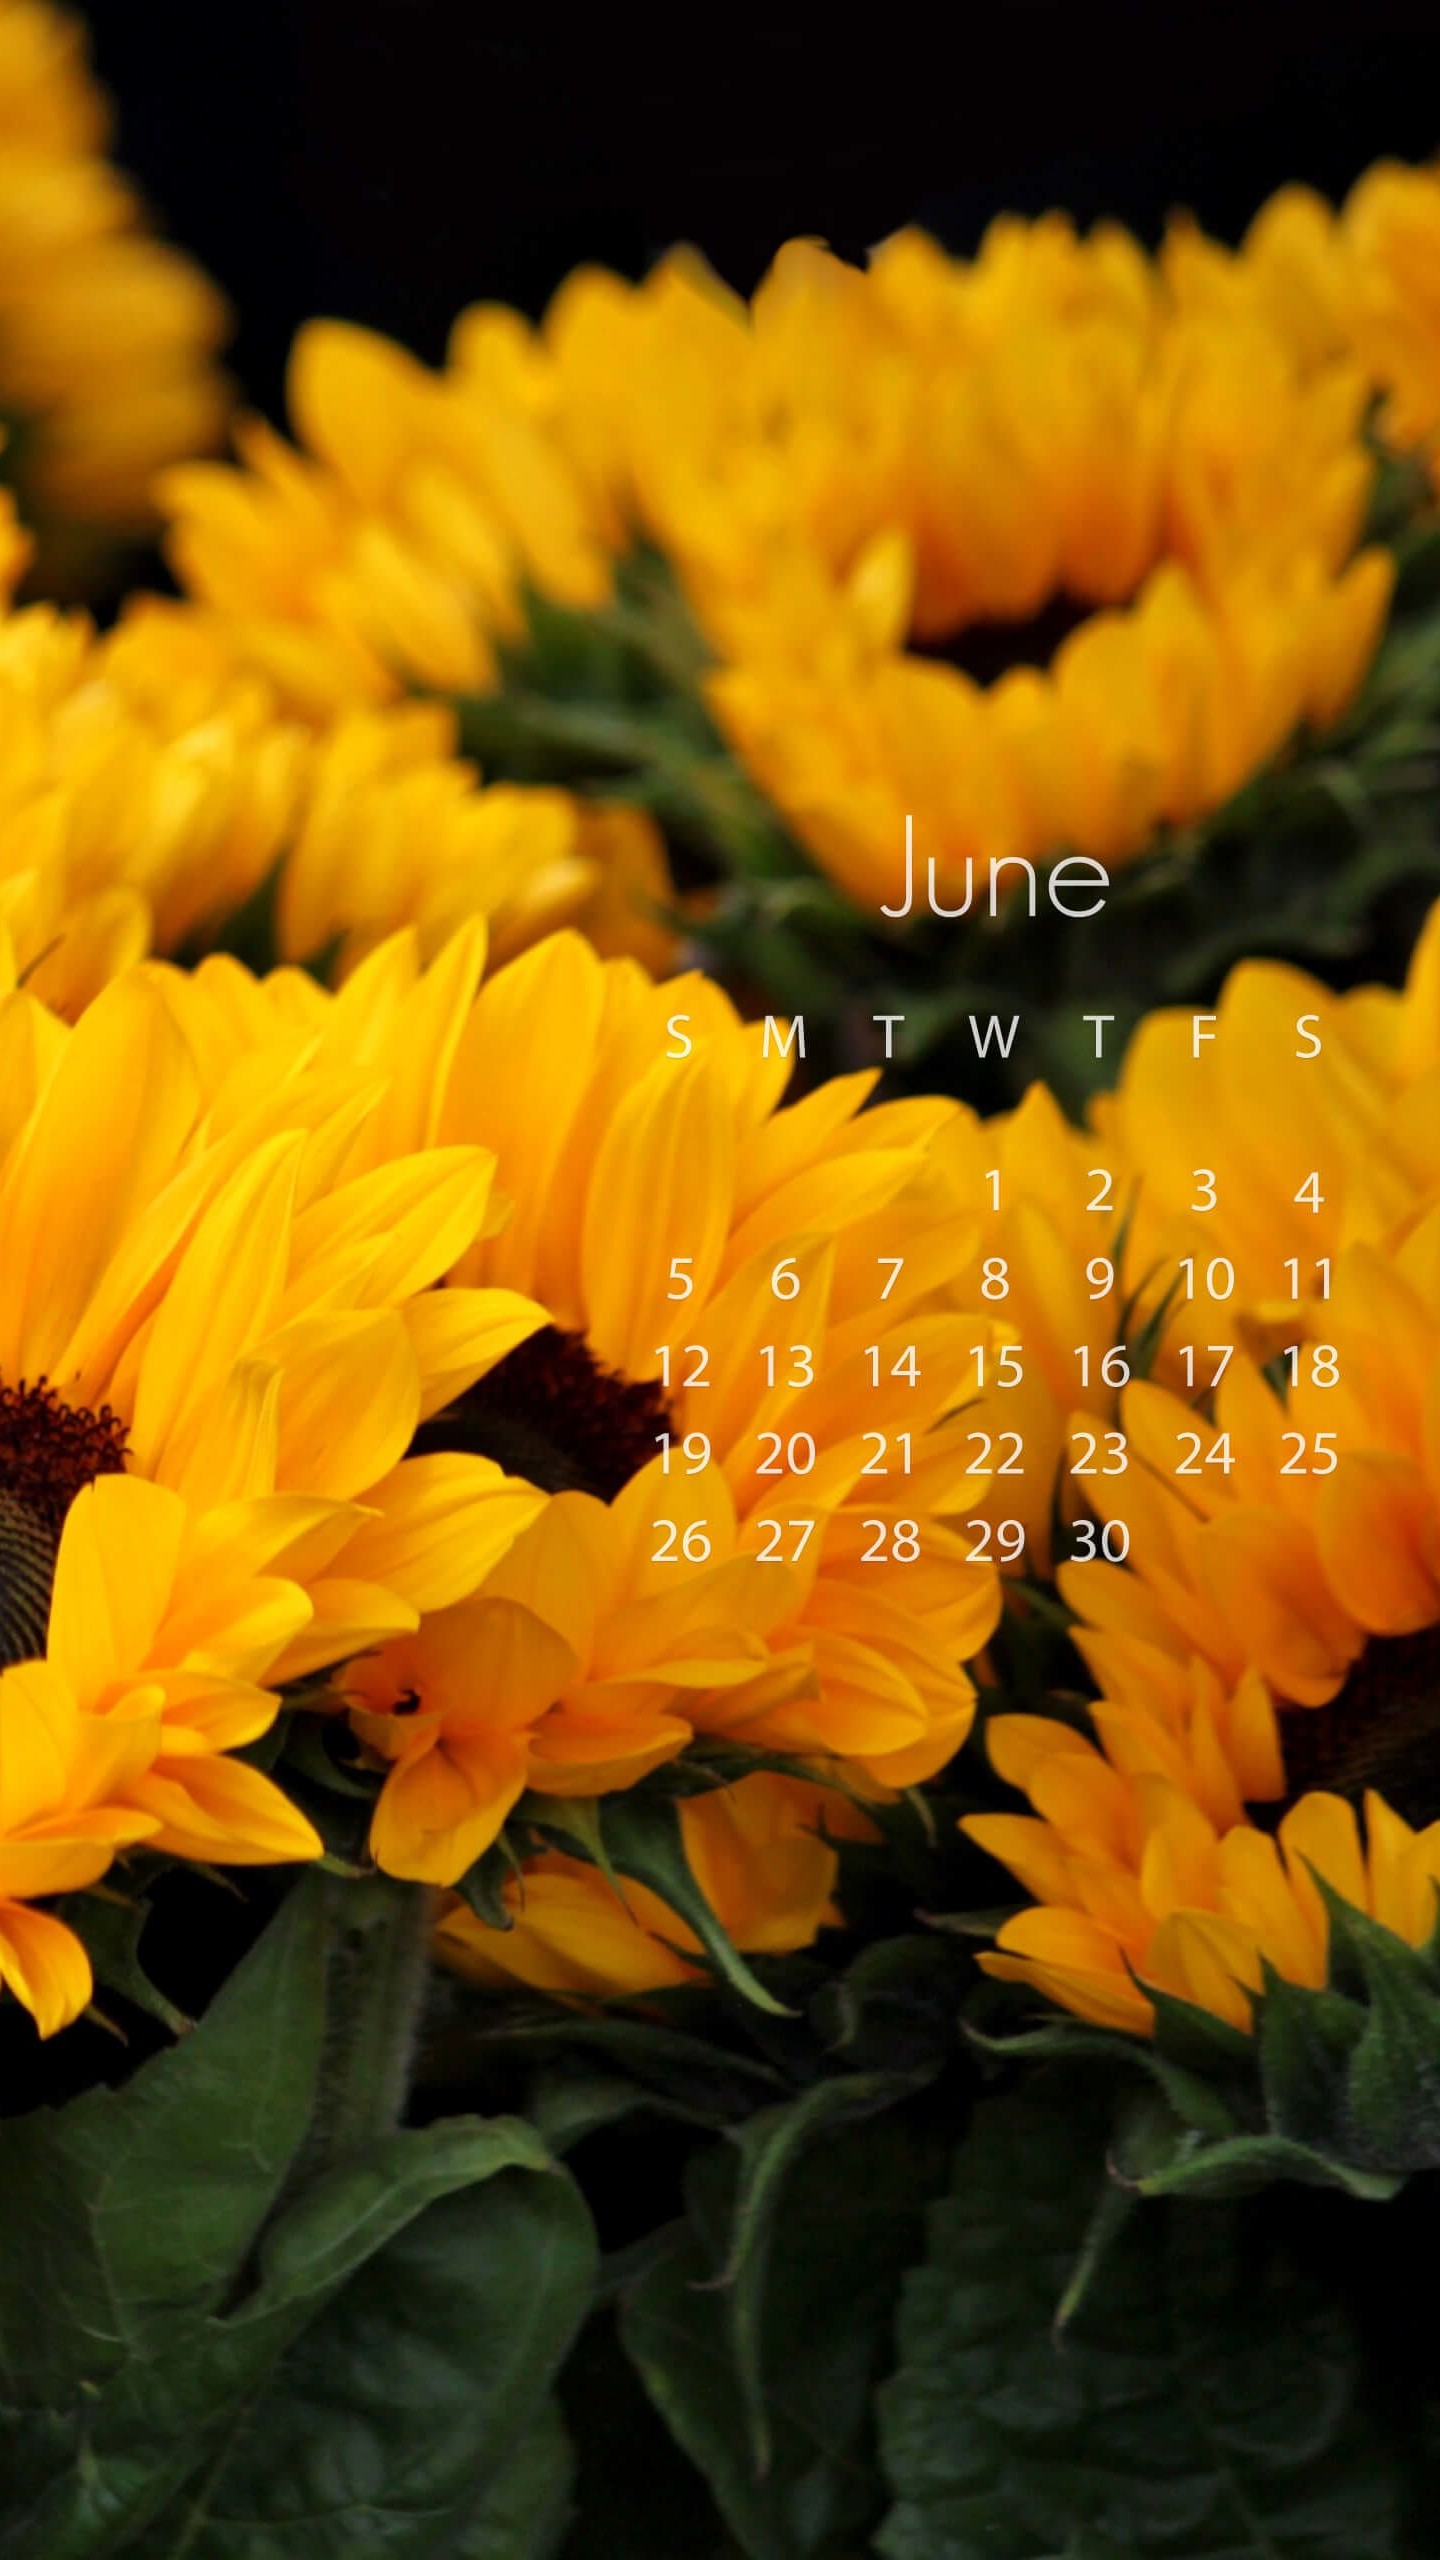 June 2016 Calendar Wallpaper for SAMSUNG Galaxy Note 4